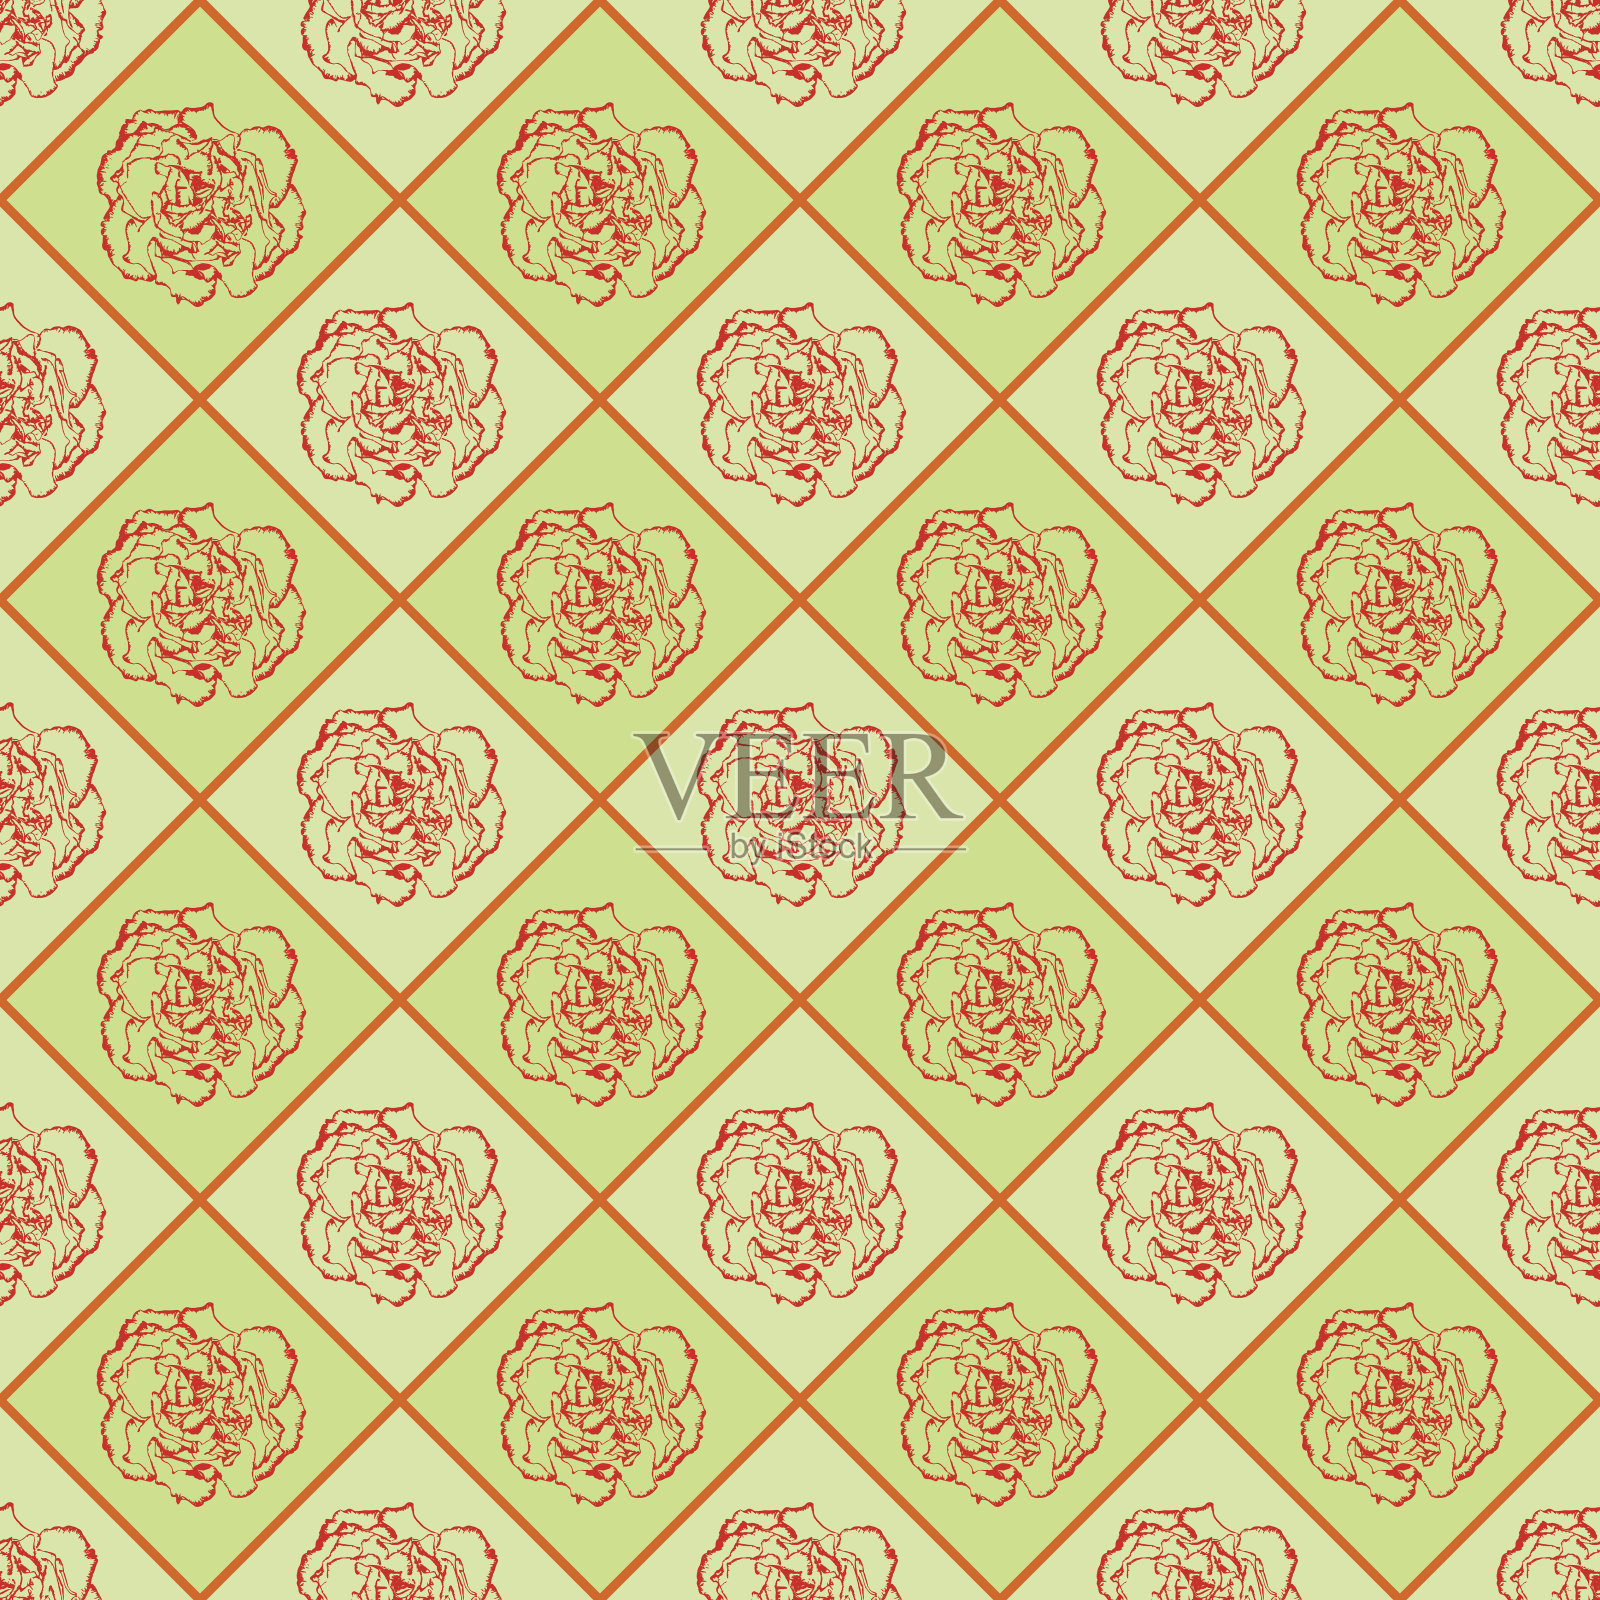 绿色和橙色向量无缝象棋风格复古纹理与丁香花。矢量图插画图片素材